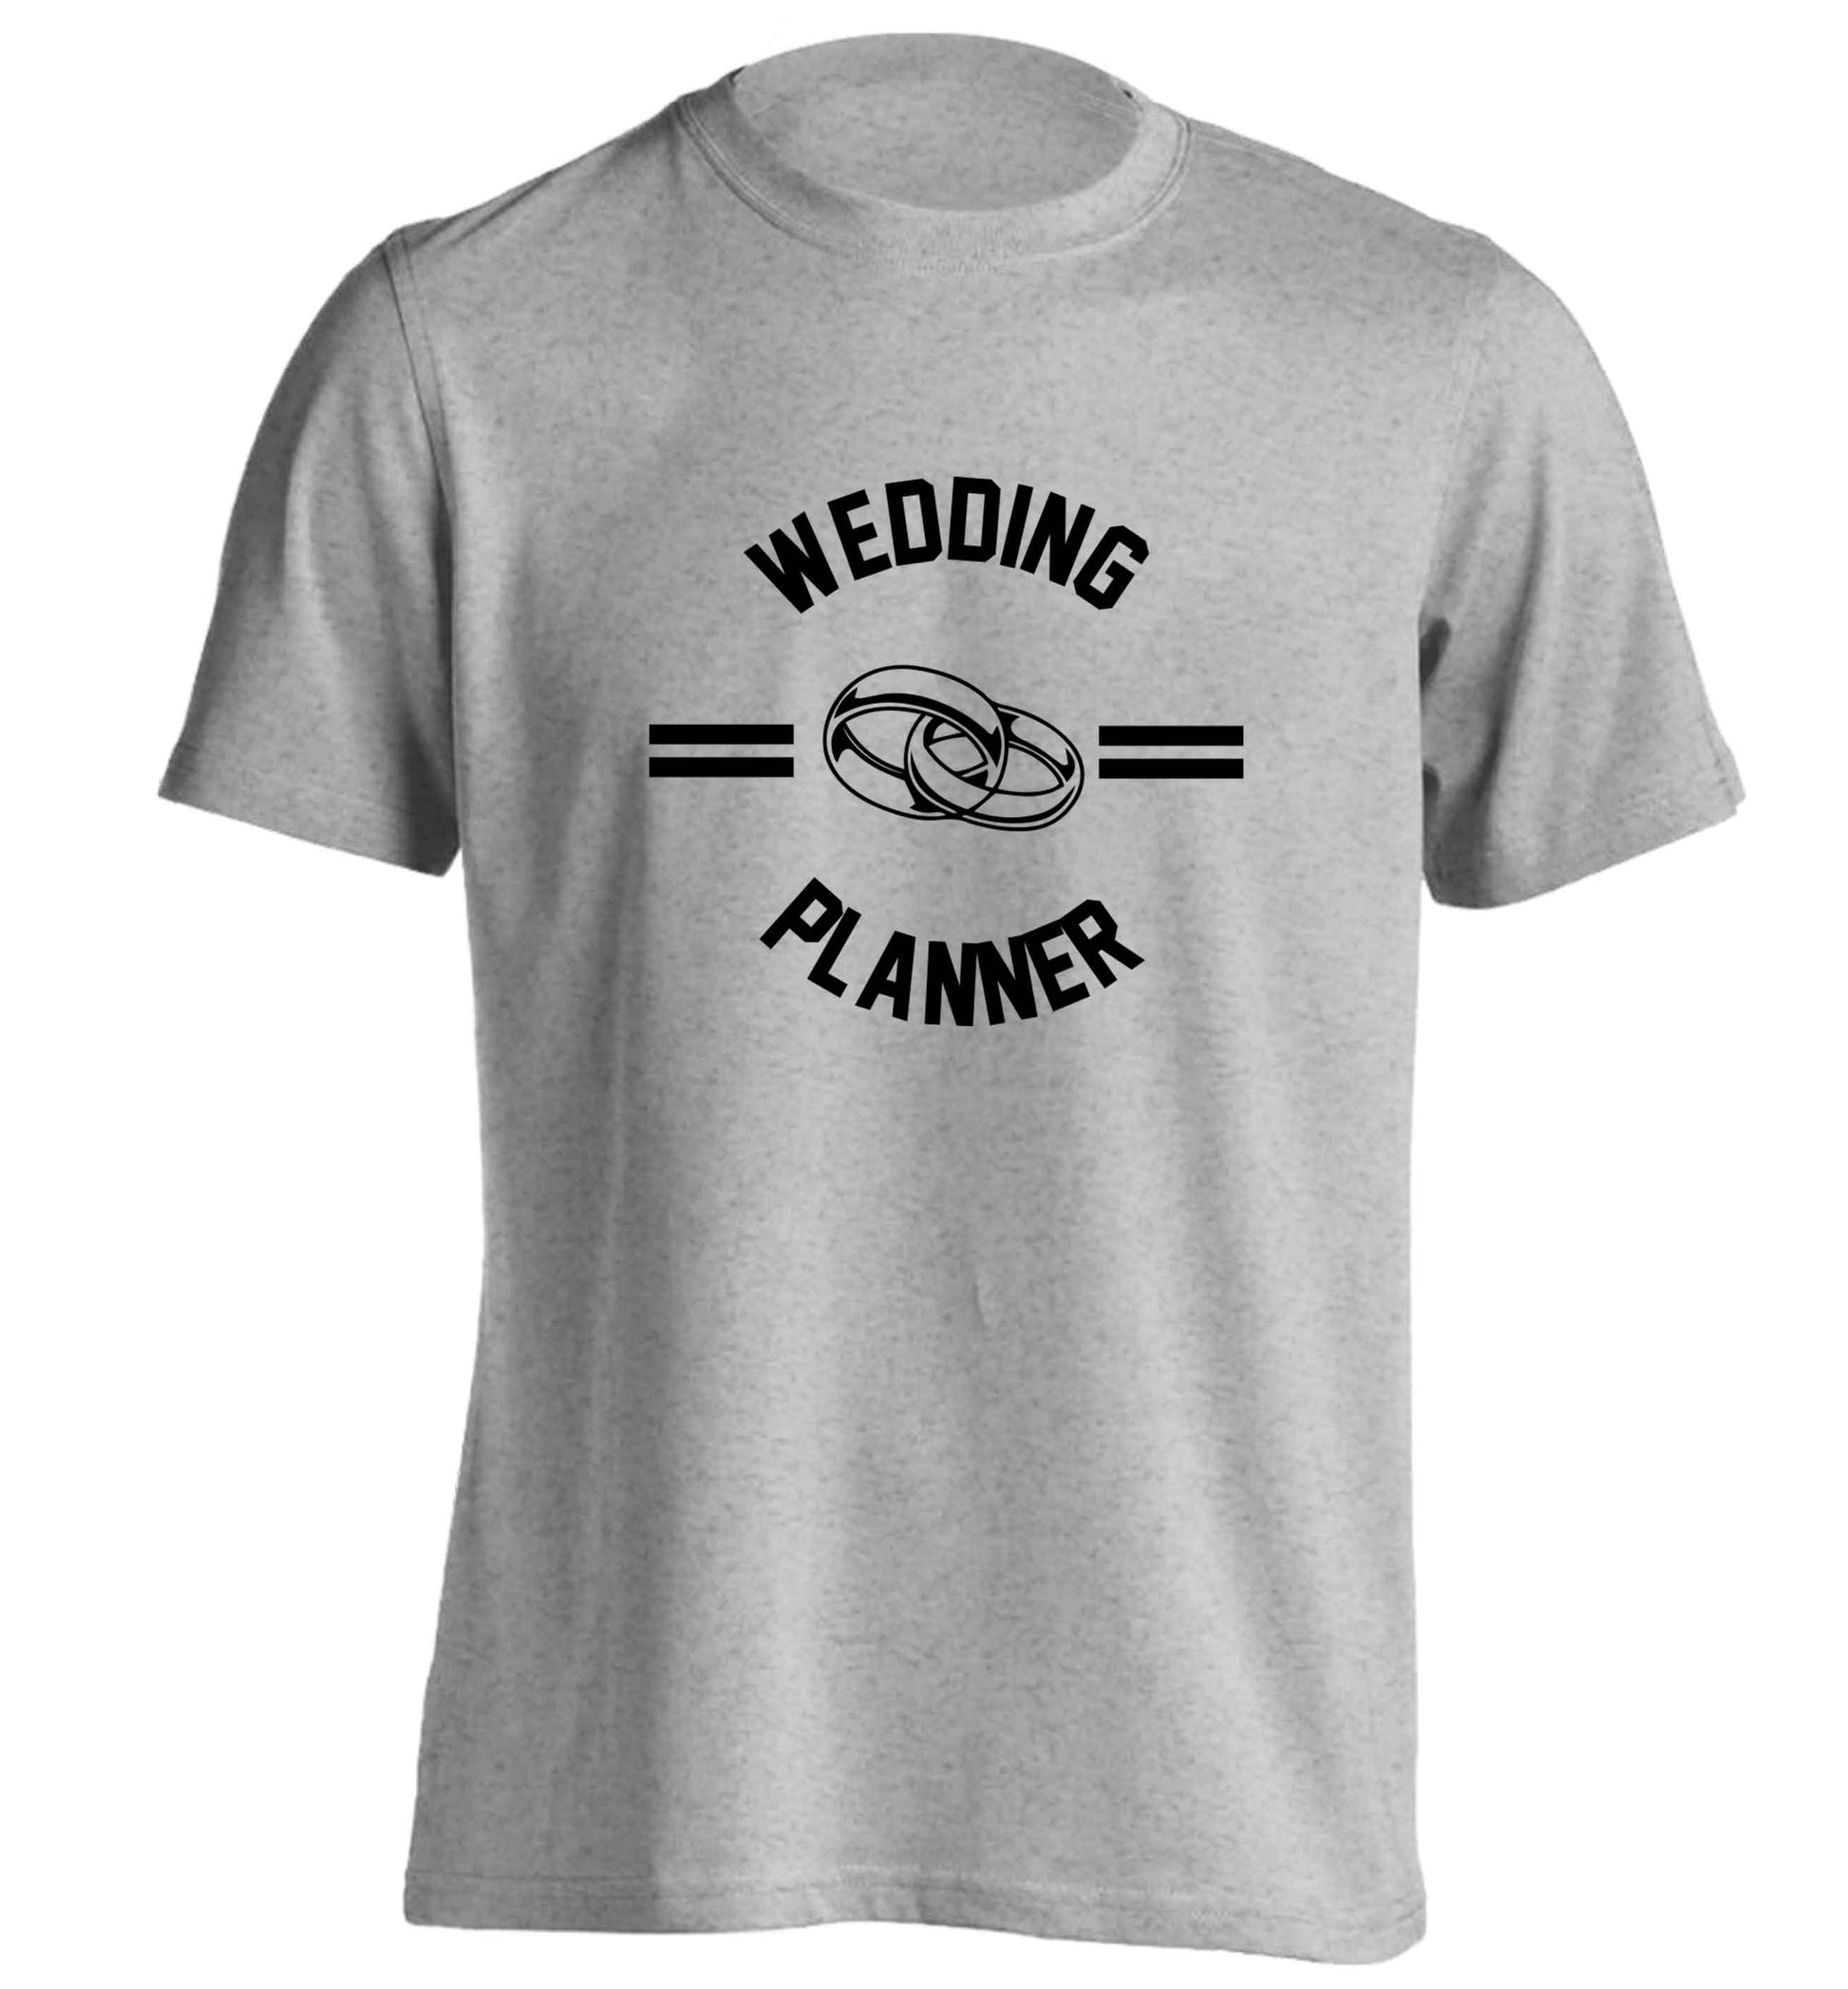 Wedding planner adults unisex grey Tshirt 2XL